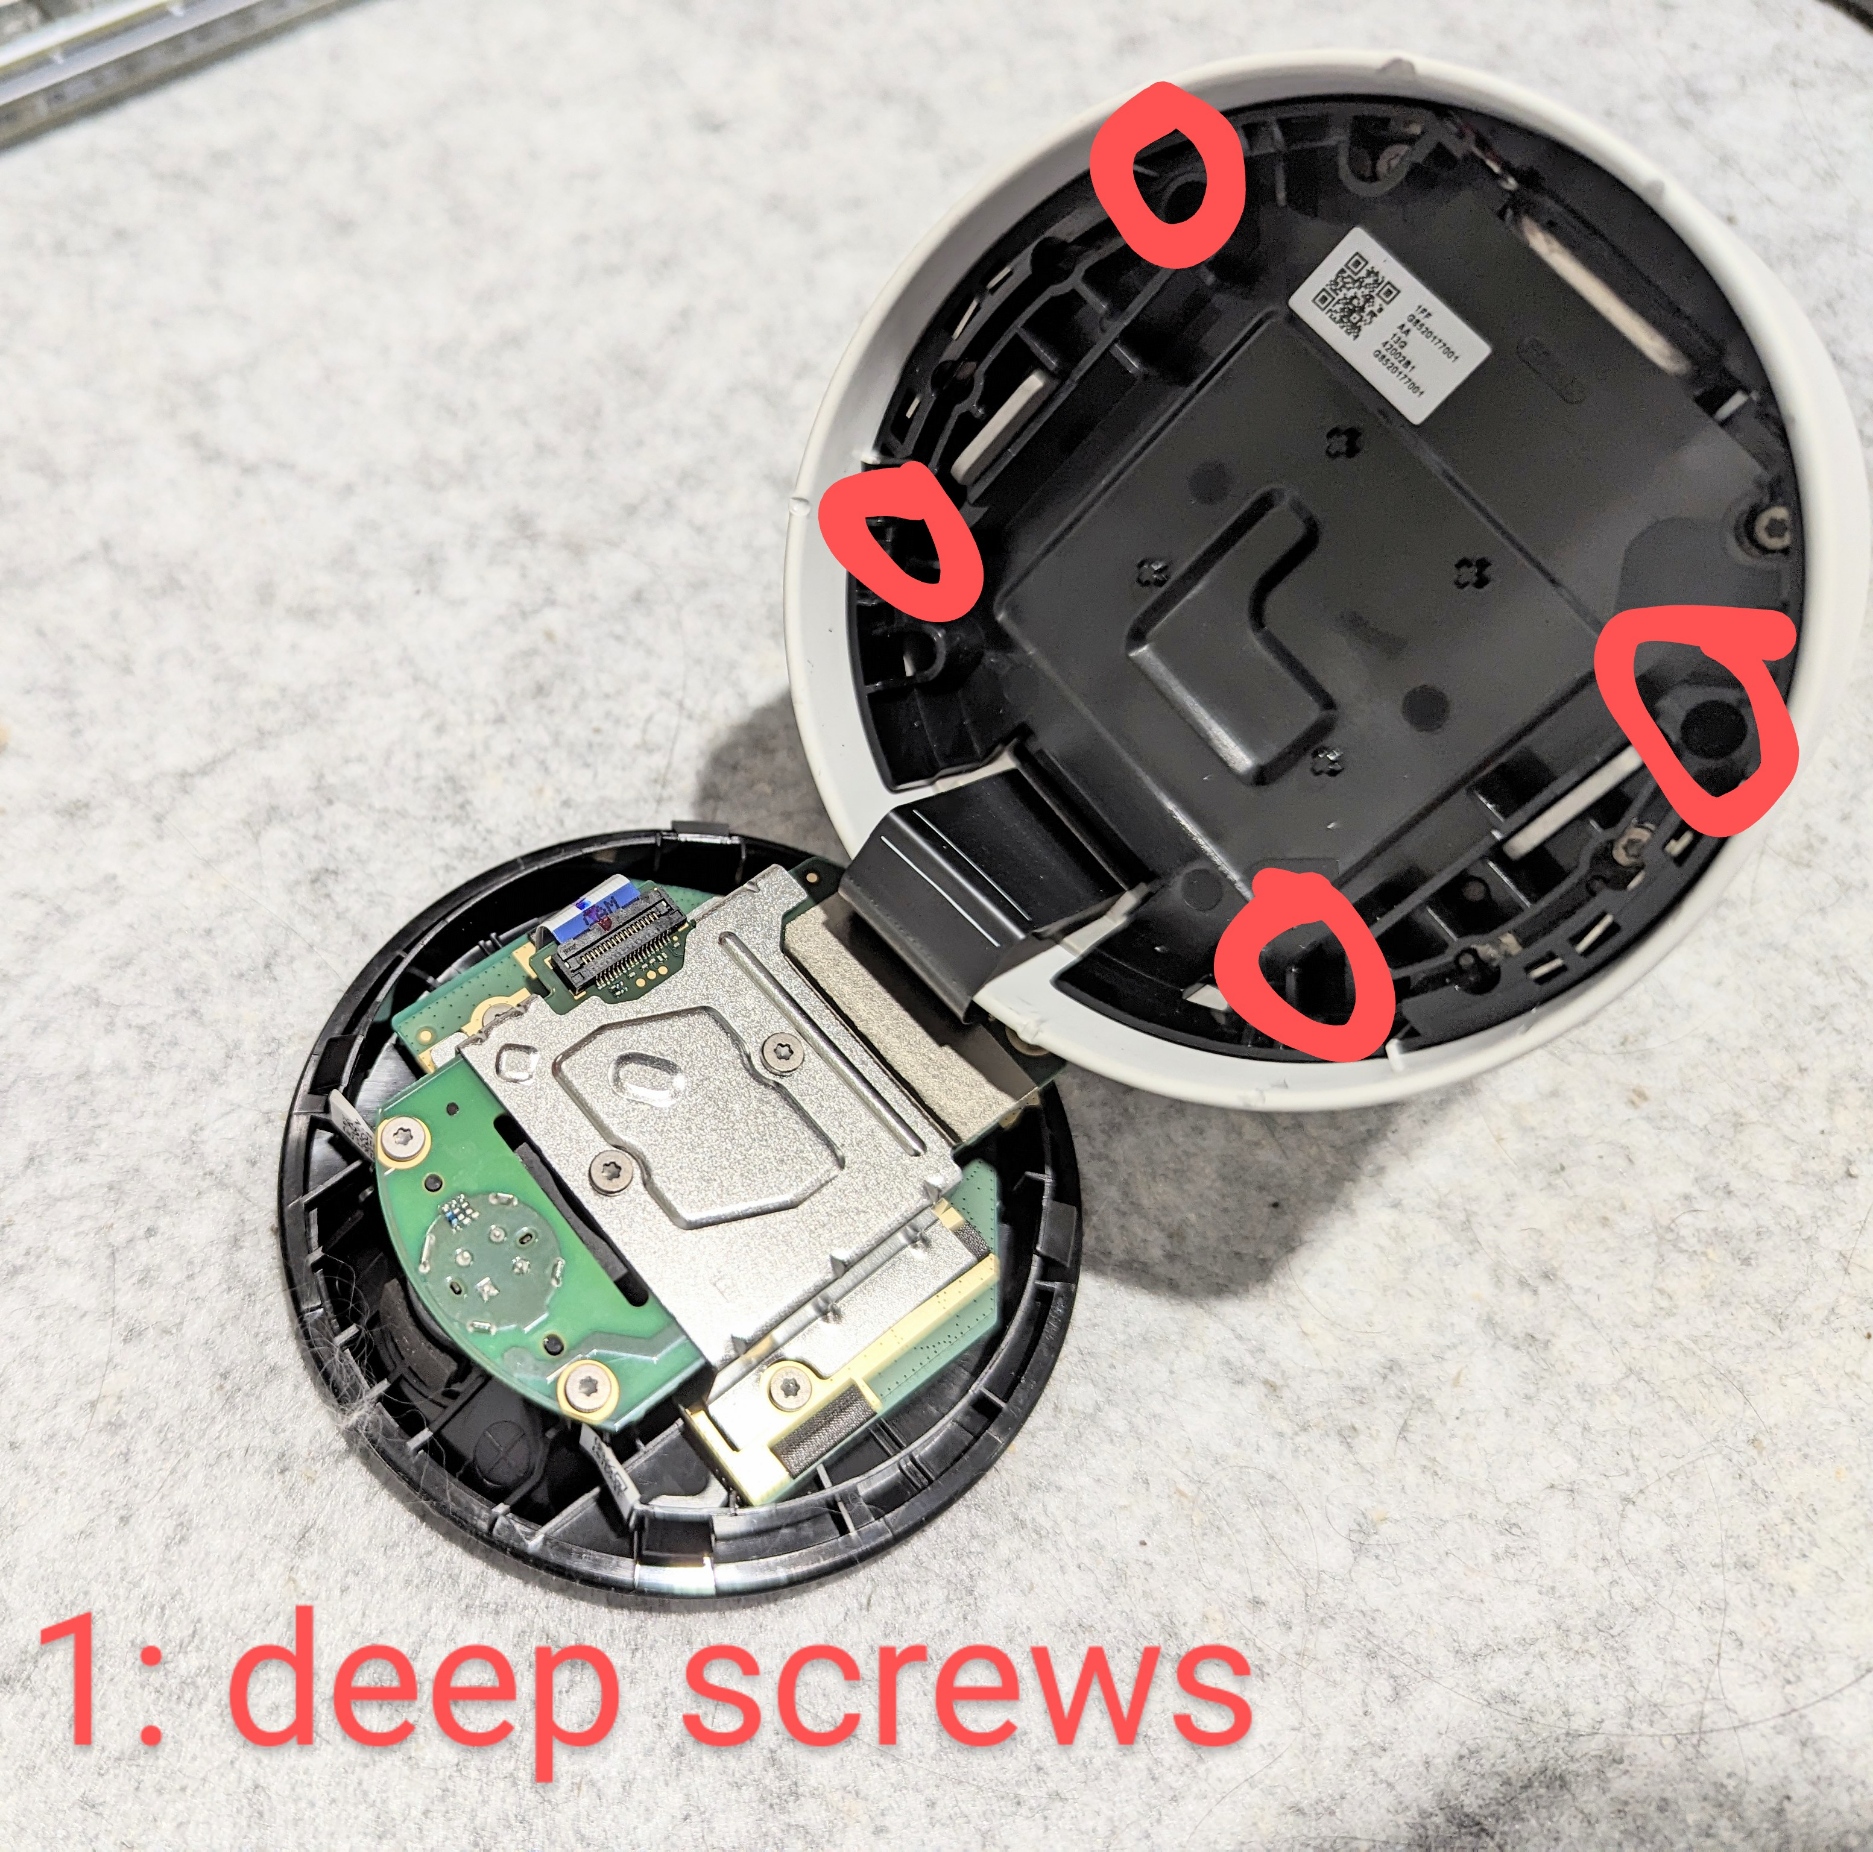 the four deep screws